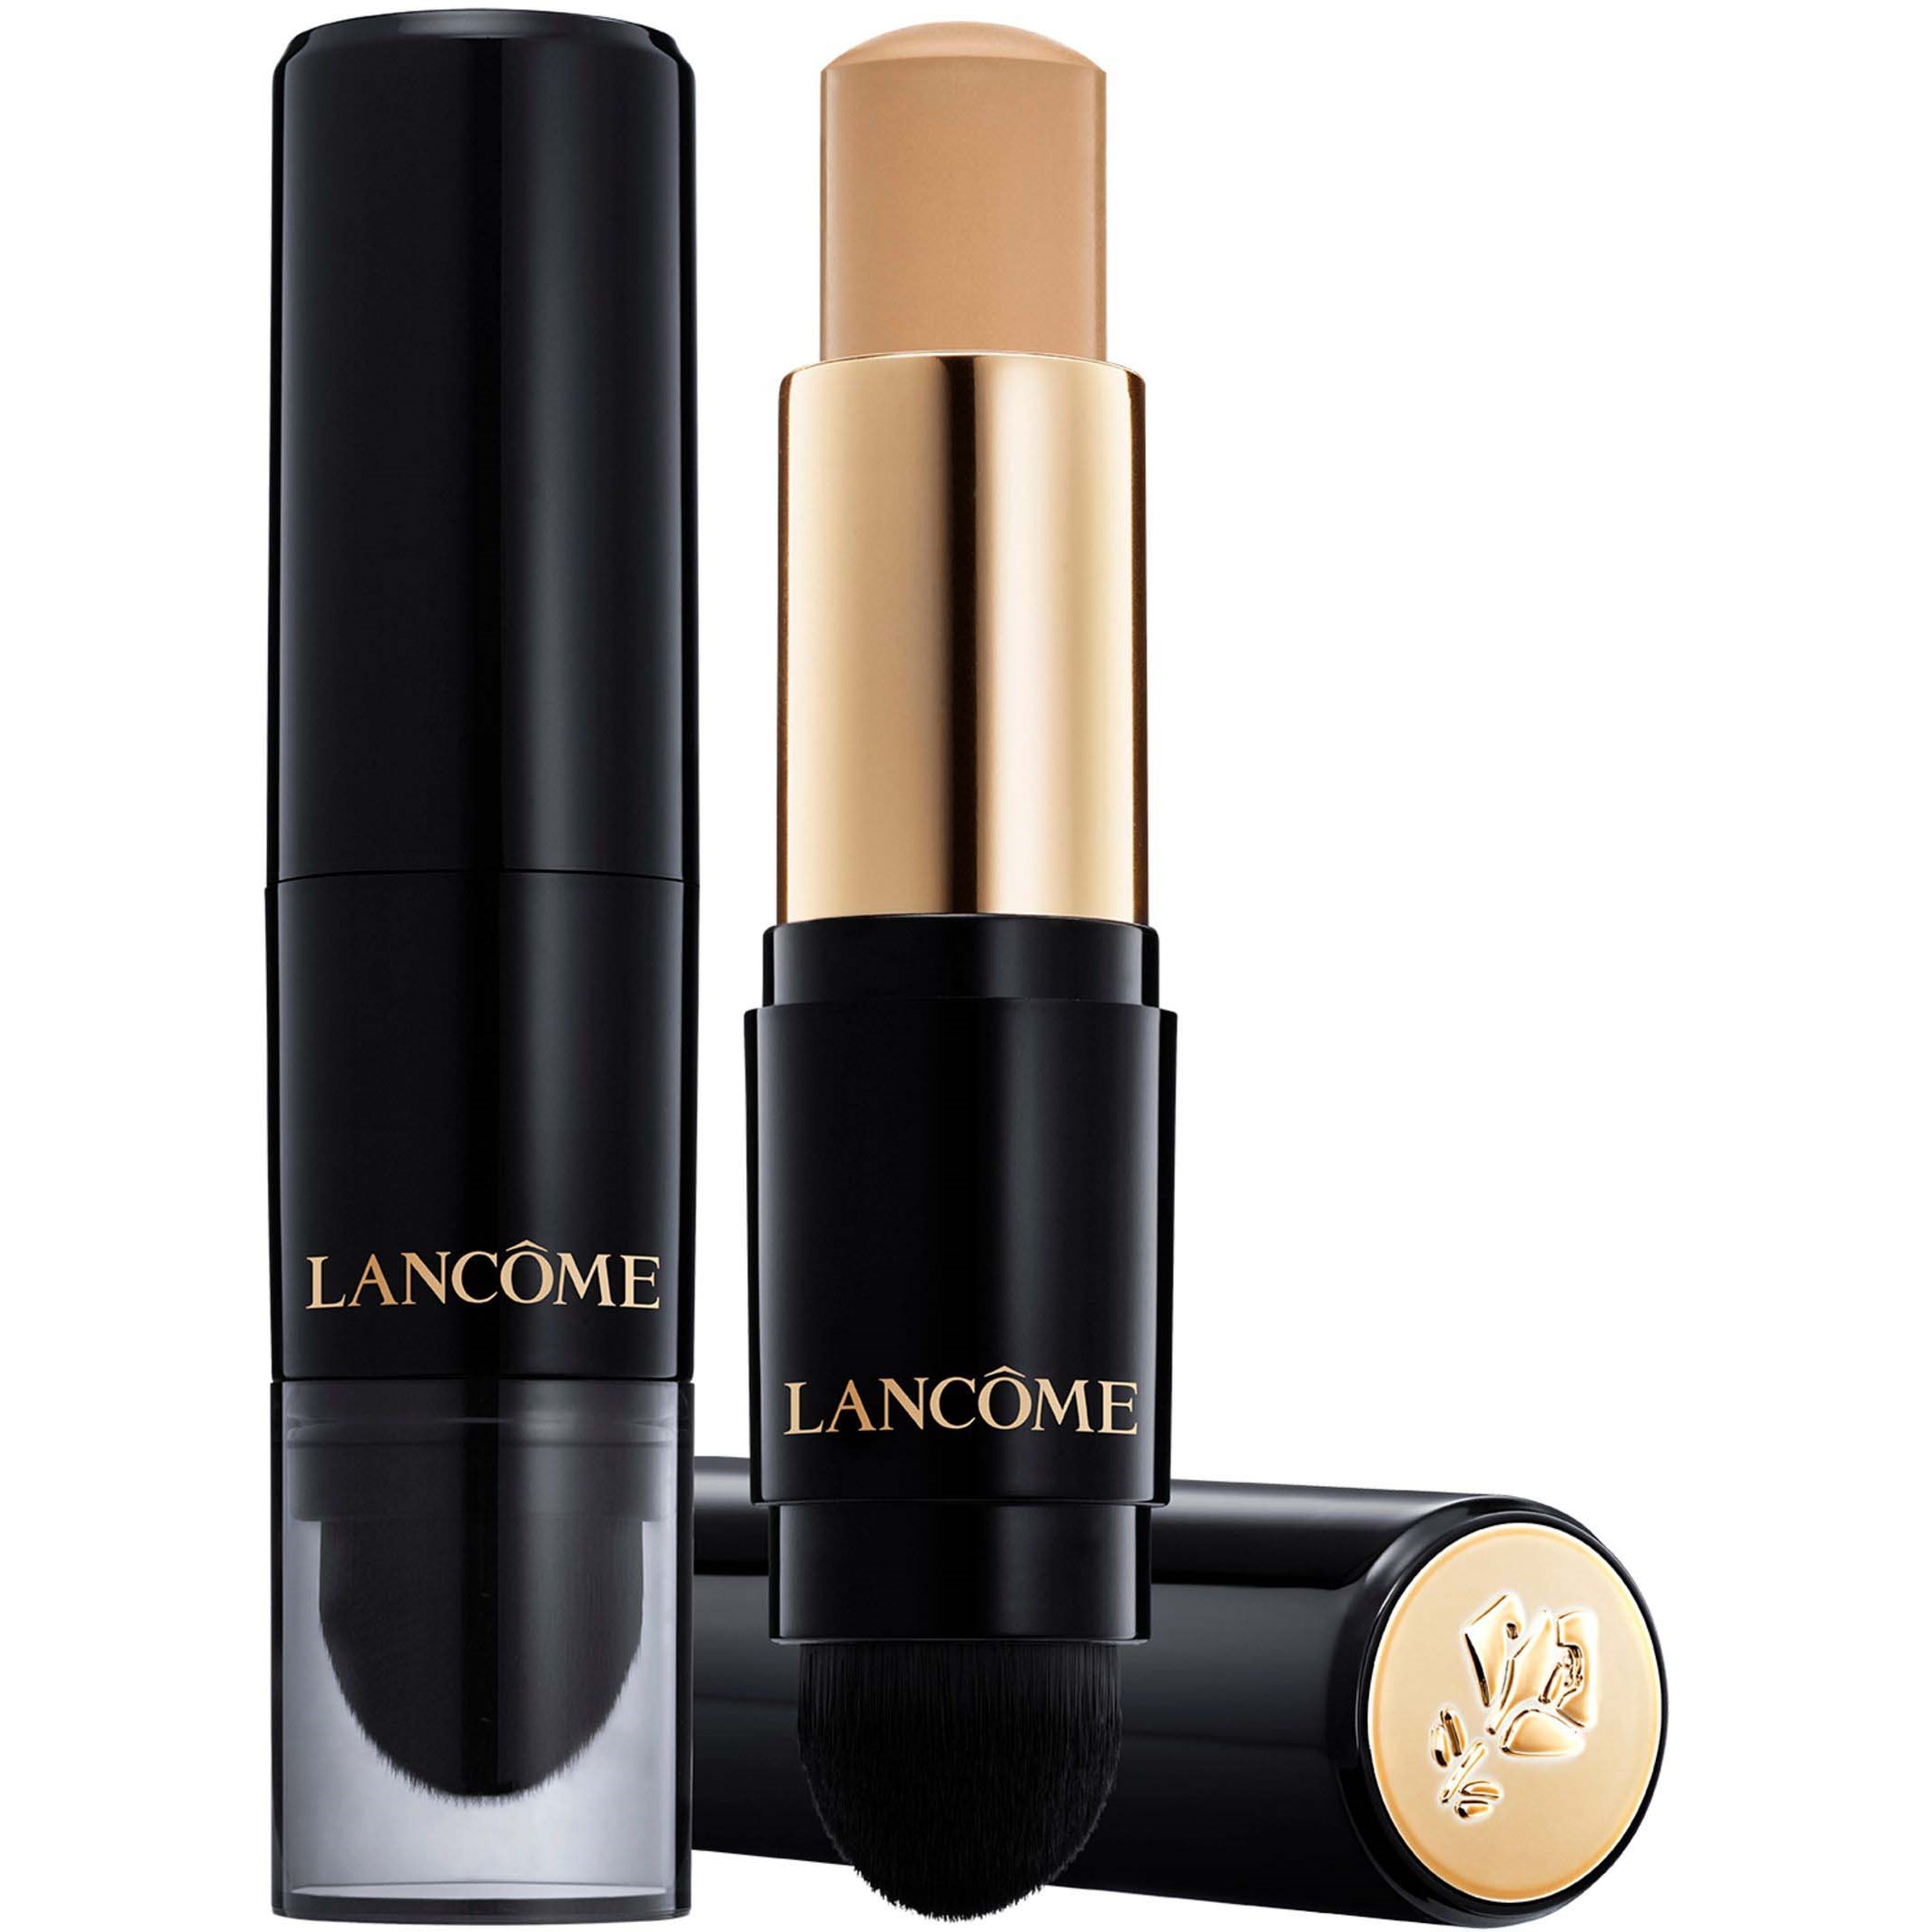 Zdjęcia - Podkład i baza pod makijaż Lancome Lancôme Podkład do twarzy w sztyfcie Teint Idole Ultra Wear Stick 